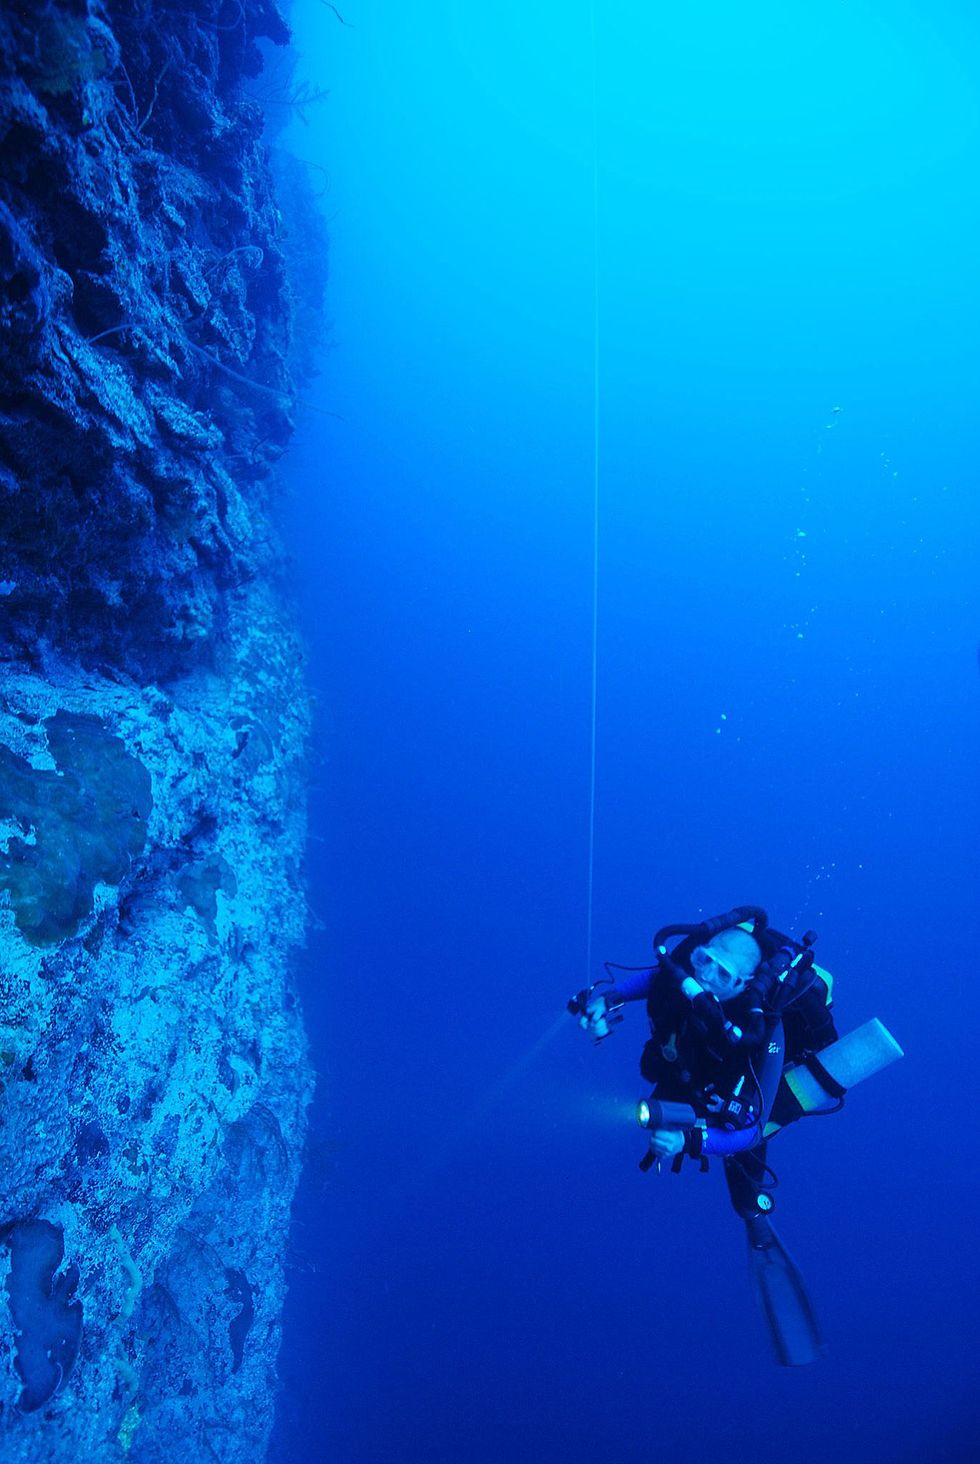 De Ocean Space Habitat is een draagbare tent die duikers naar believen kunnen verplaatsen Daardoor kunnen ze langer en op veel verschillende locaties duiken